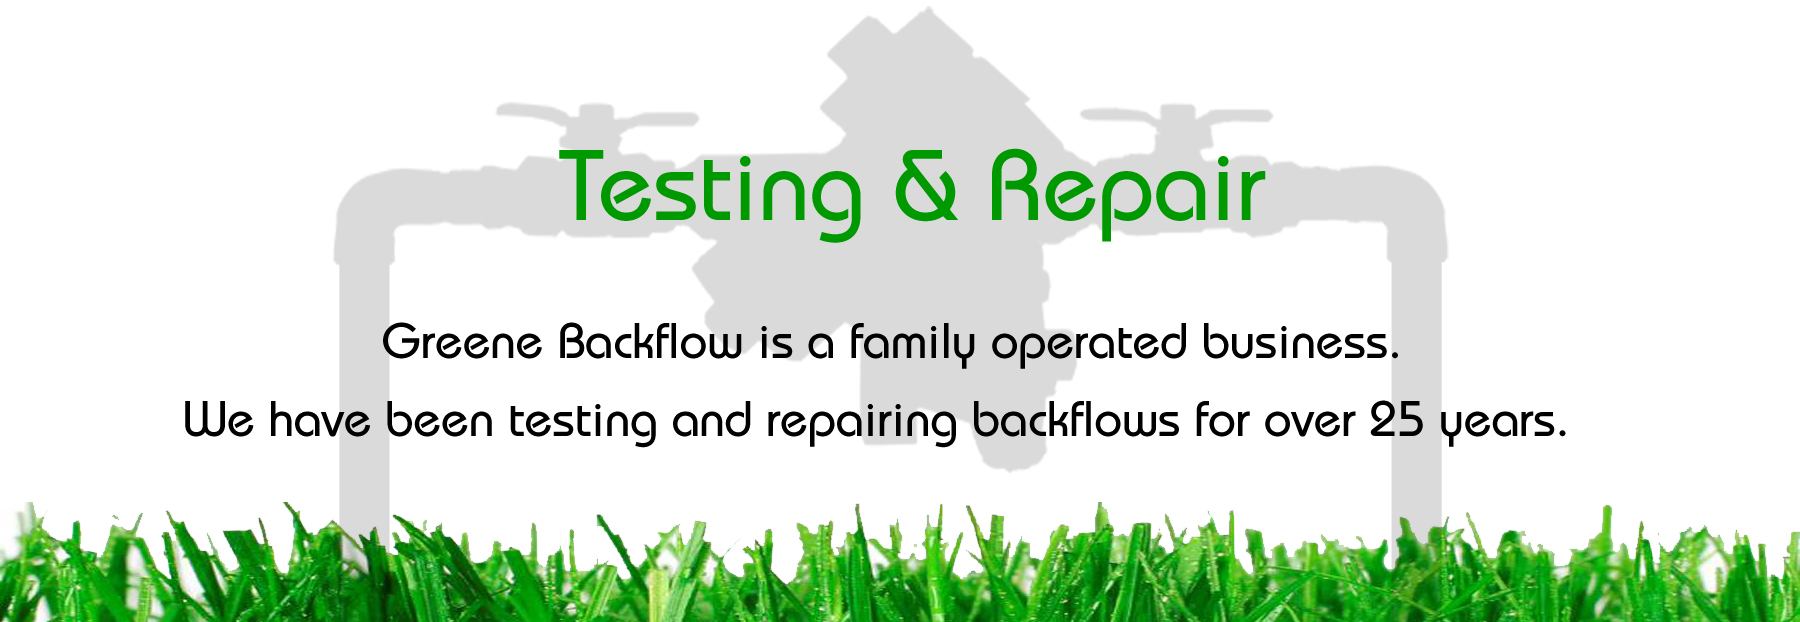 Greene Backflow Testing & Repair